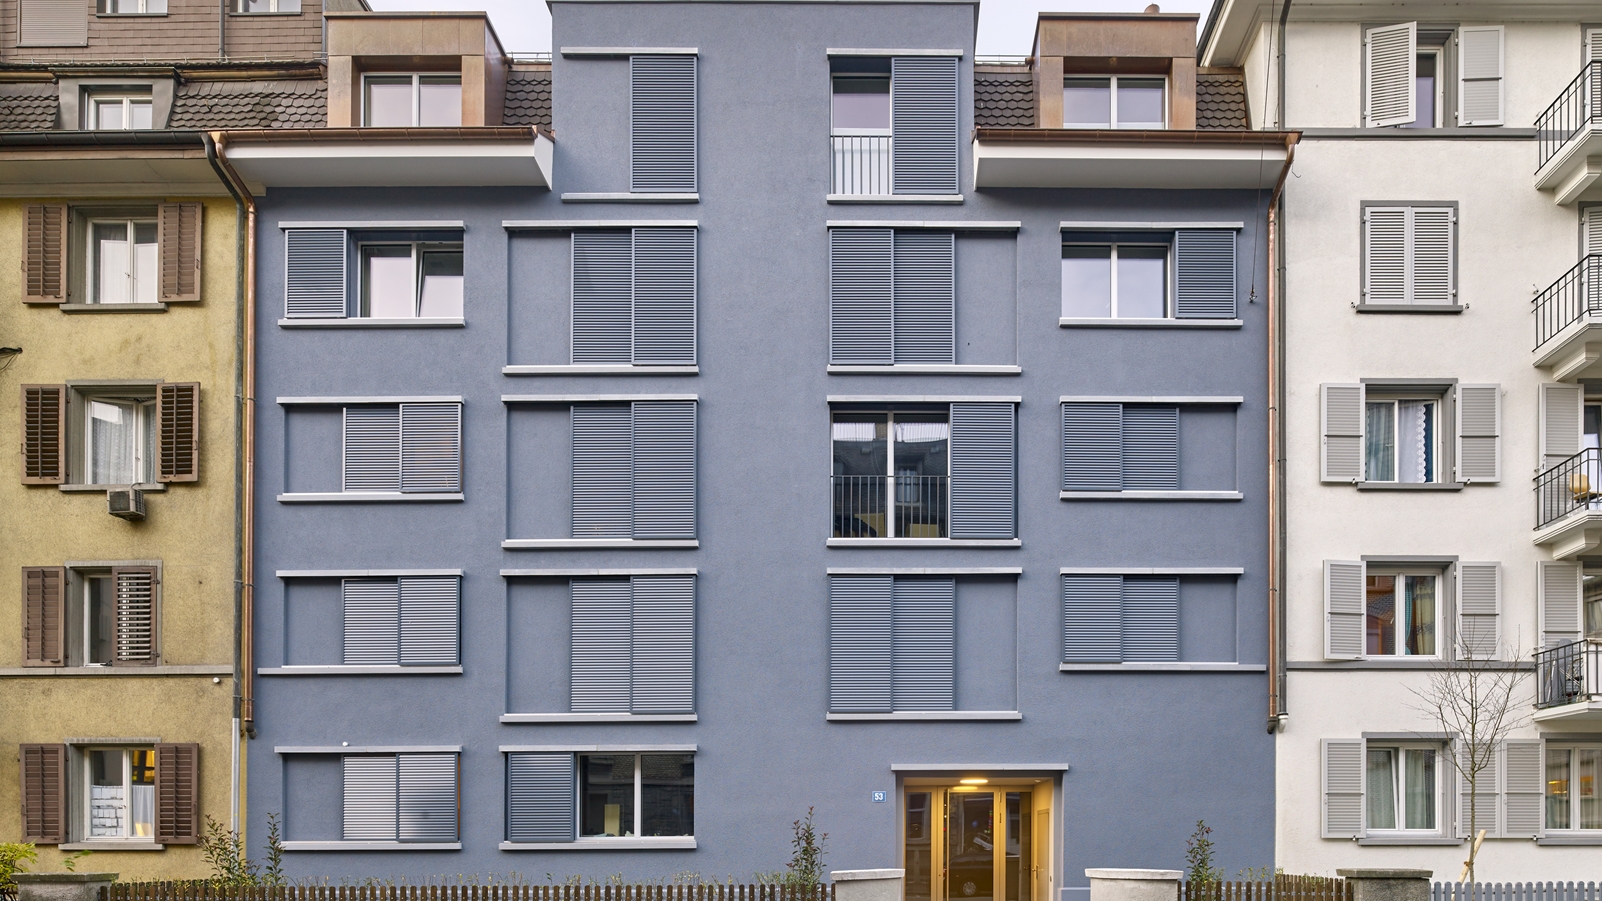 Wohngebäude Weststrasse - Bild 2.jpg (2)